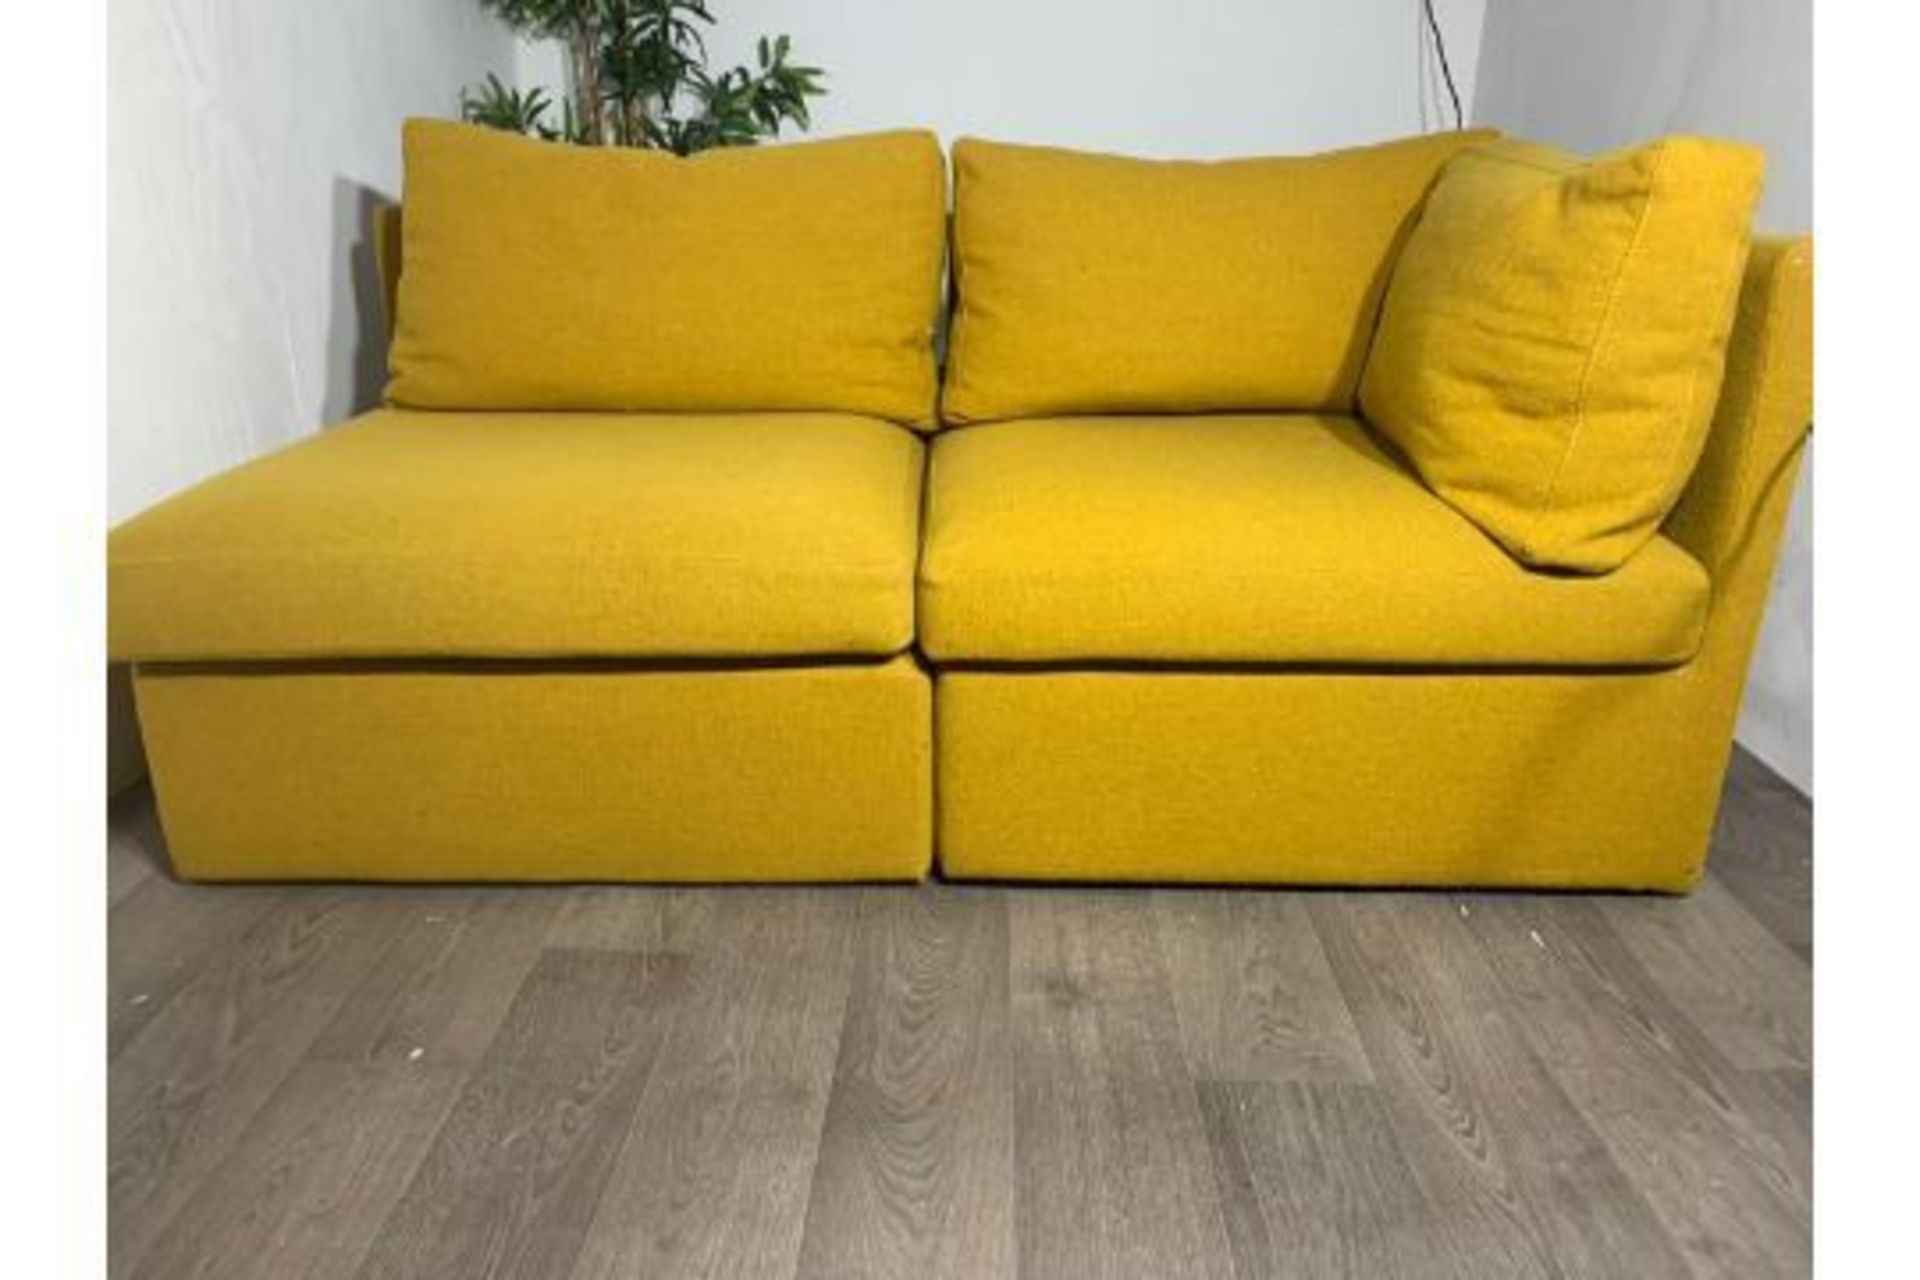 Modular 2 Piece Sofa - Image 2 of 2